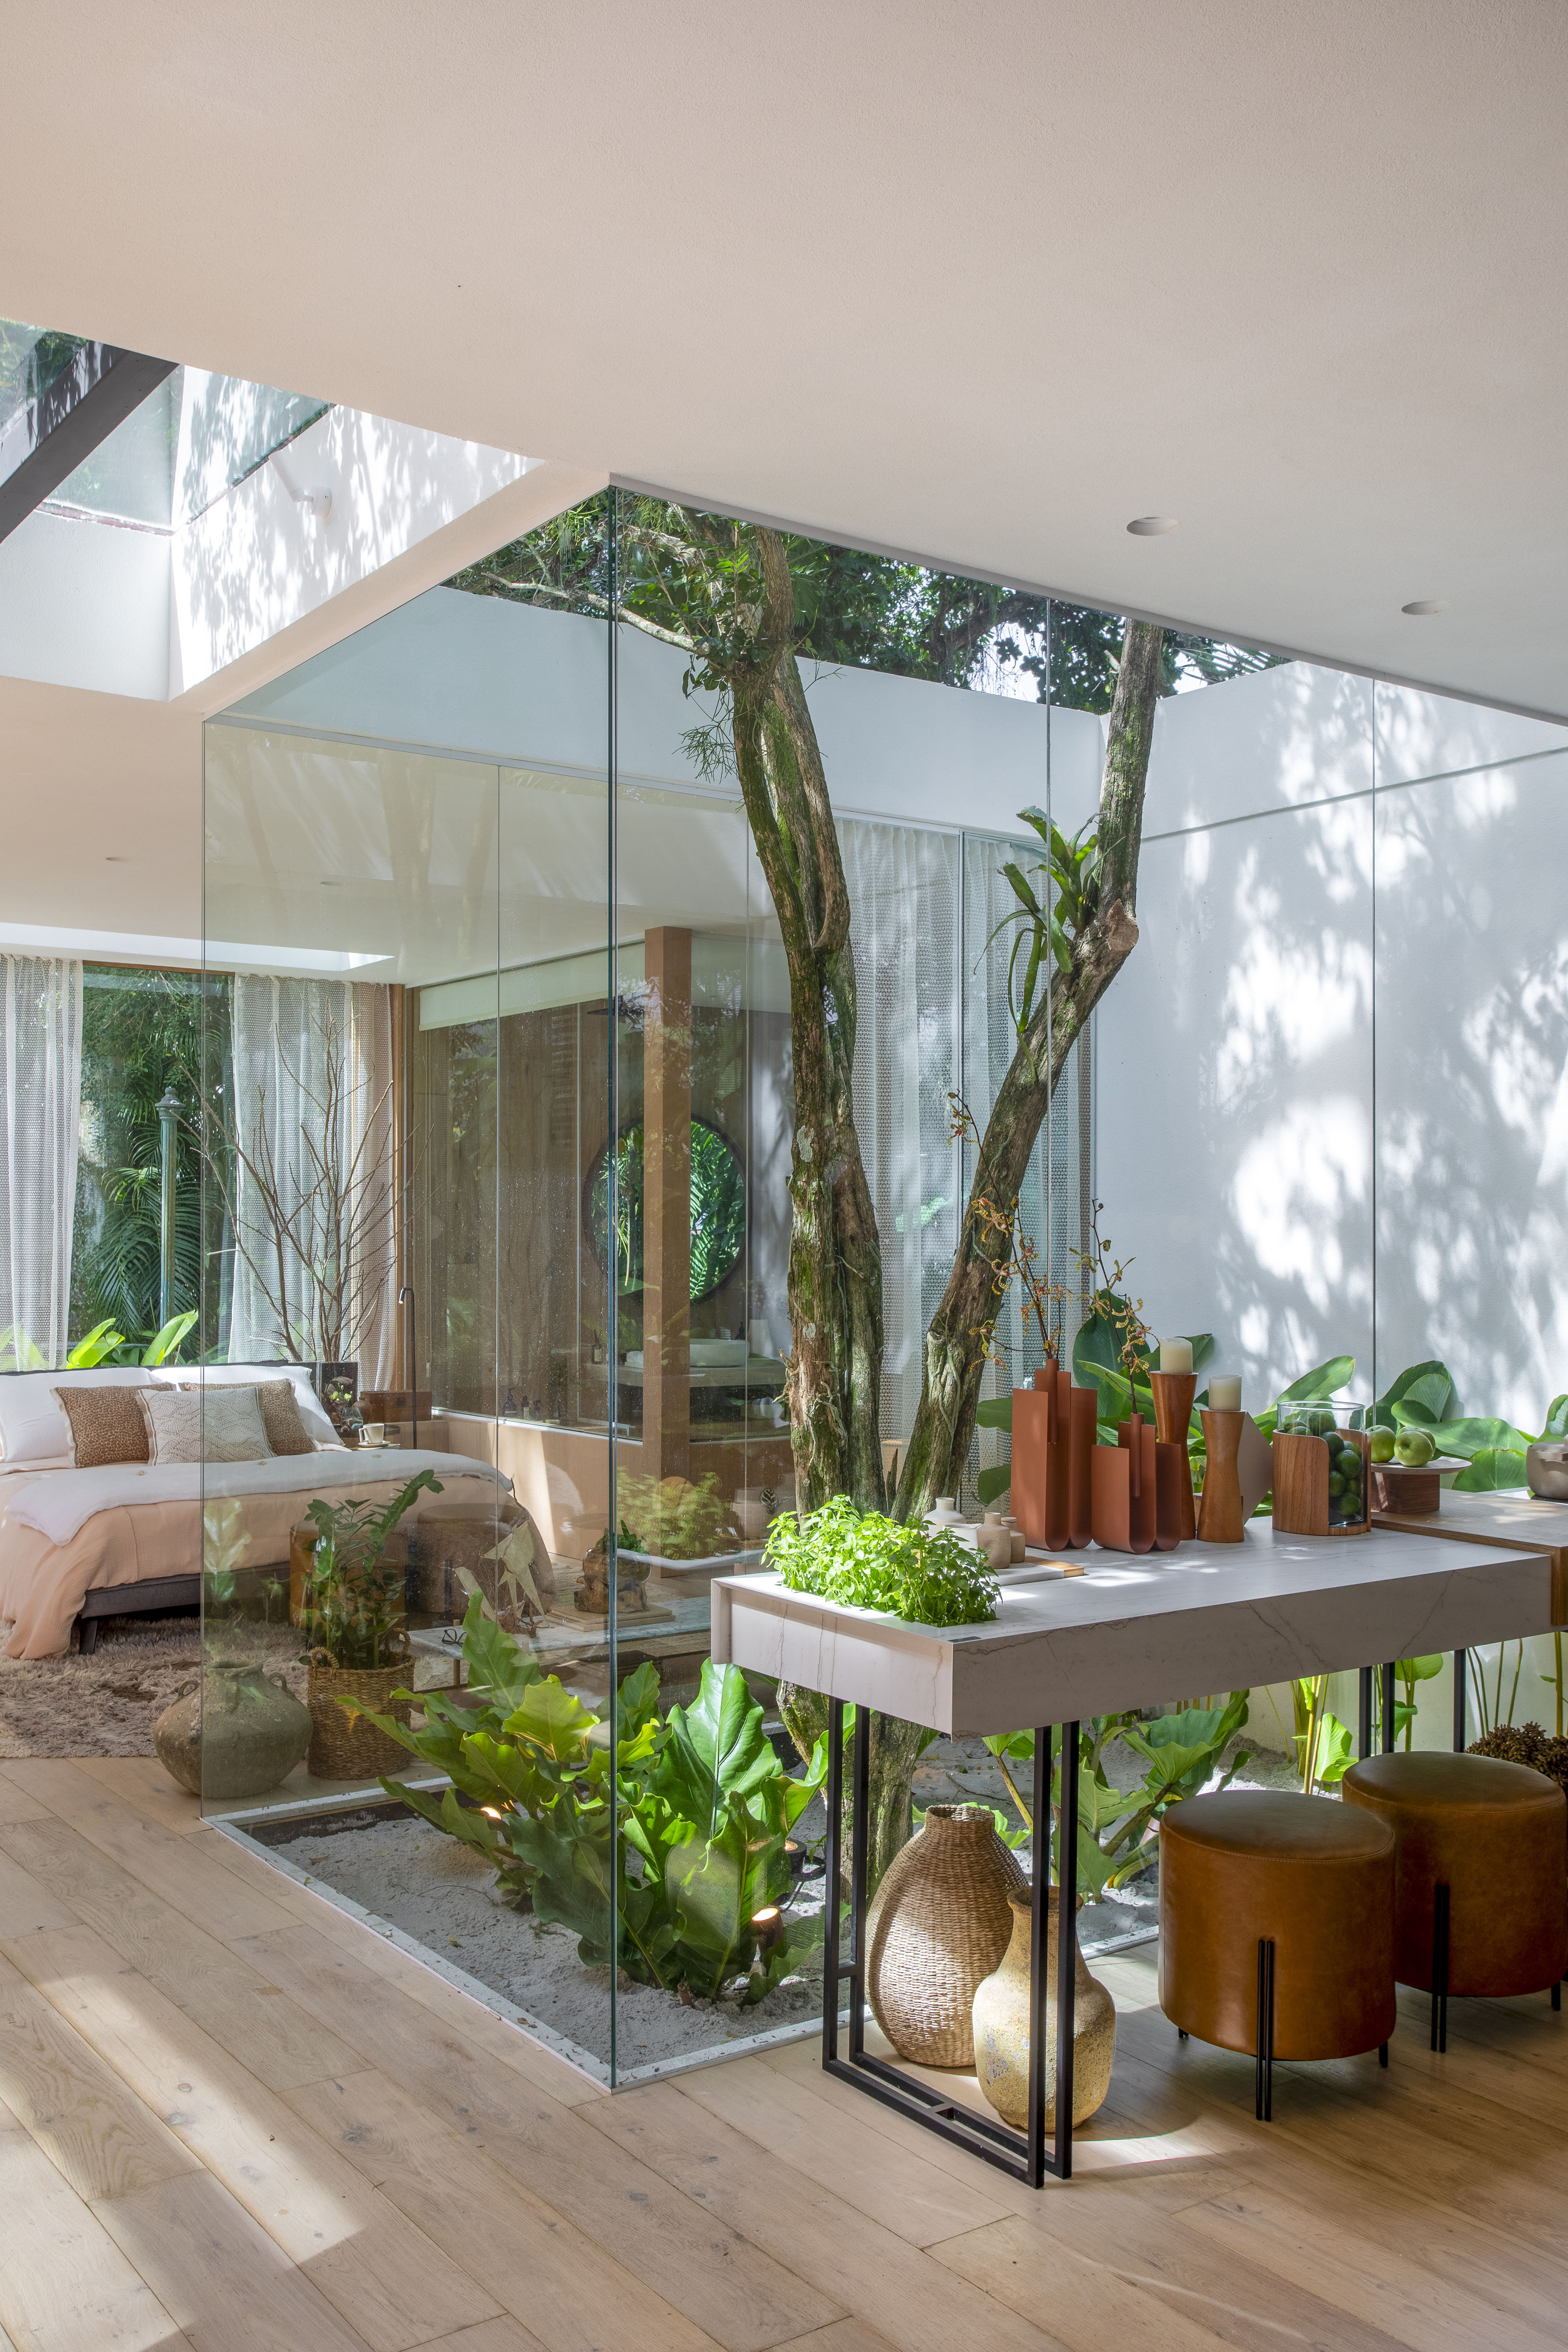 Casa de campo de 105 m² no meio da natureza é feita com três contêineres. Projeto de Up3 Arquitetura para a CASACOR Rio de Janeiro 2023, Na foto, quarto de casal com parede e teto de vidro, jardim interno e aparador.